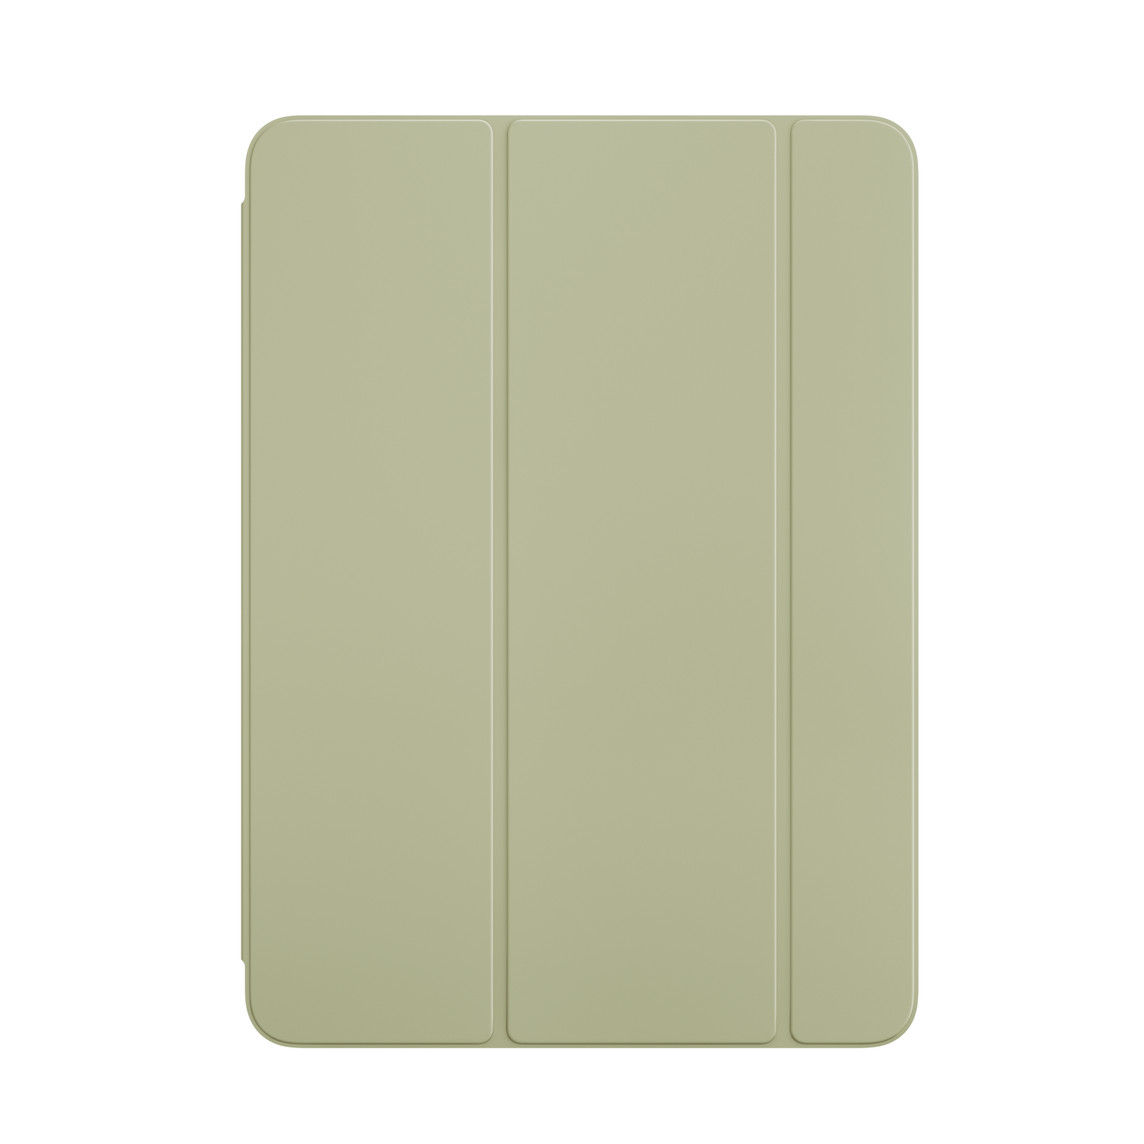 iPad Air için Yeşil Smart Folio’nun önden dış görünümü.